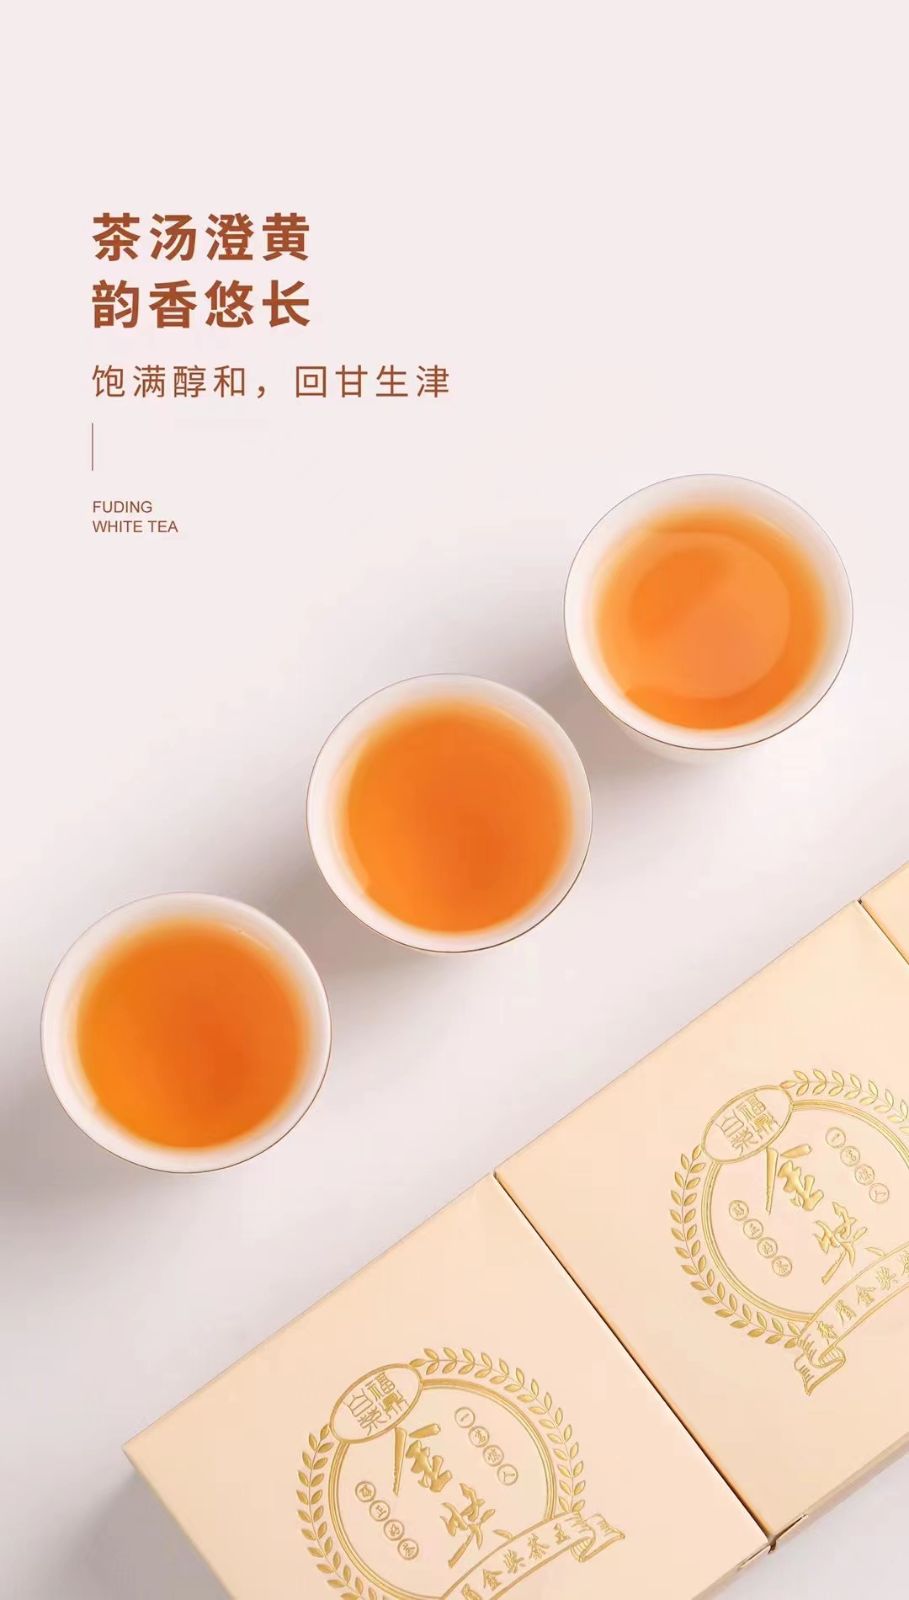 COTV直播-福建省益馨茗茶业有限公司生产销售福鼎白茶、白牡丹茶、大红袍茶、茉莉花茶及各种绿茶、红茶系列产品，欢迎大家光临！